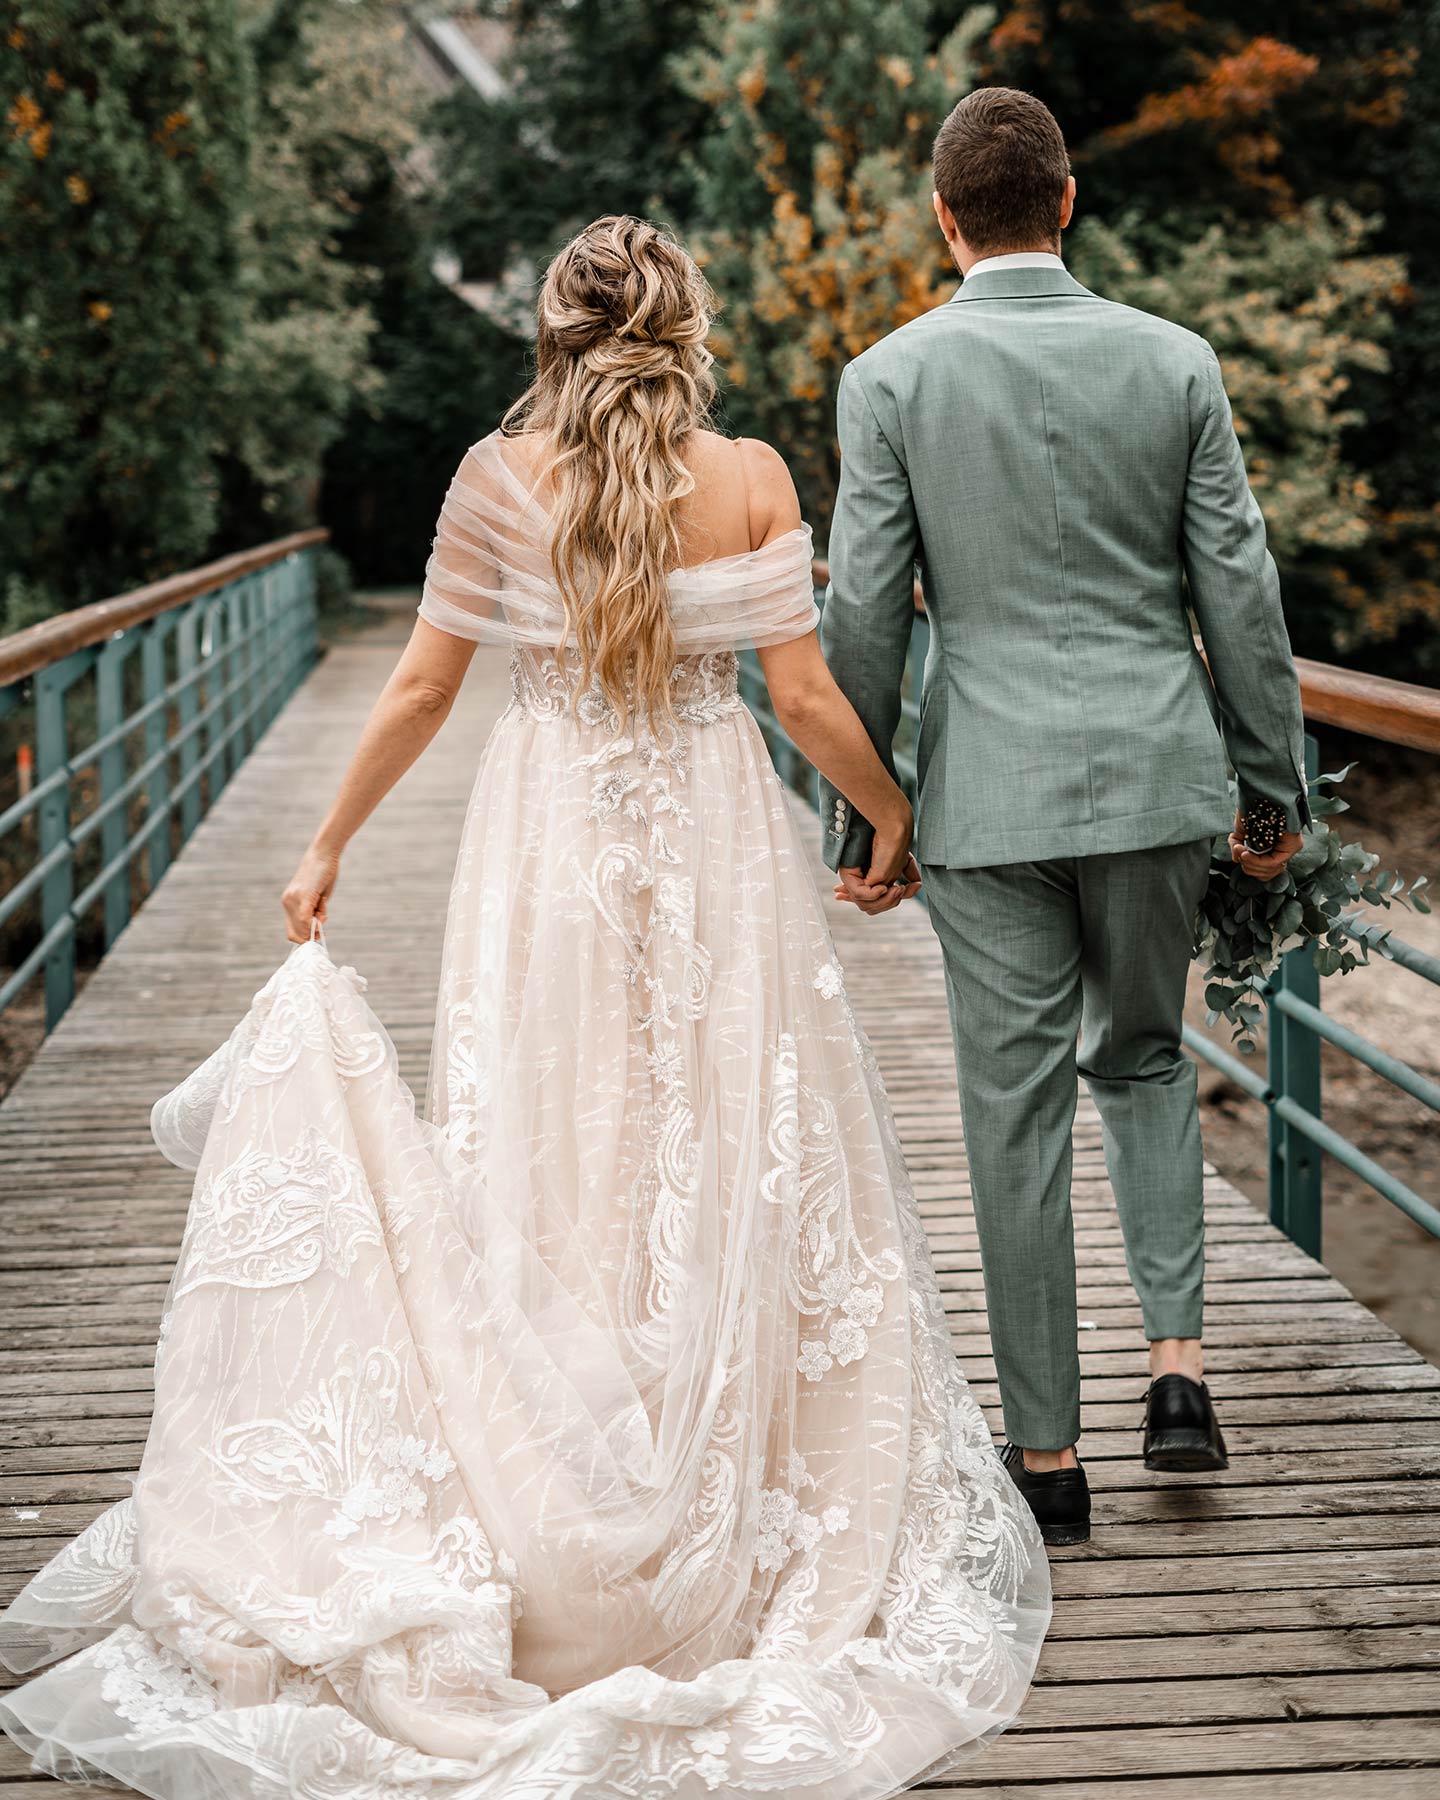 Das Hochzeitspaar ist von hinten zu sehen. Die Braut und der Bräutigam halten sich an der Hand und gehen gemeinsam über eine Holzbrücke.